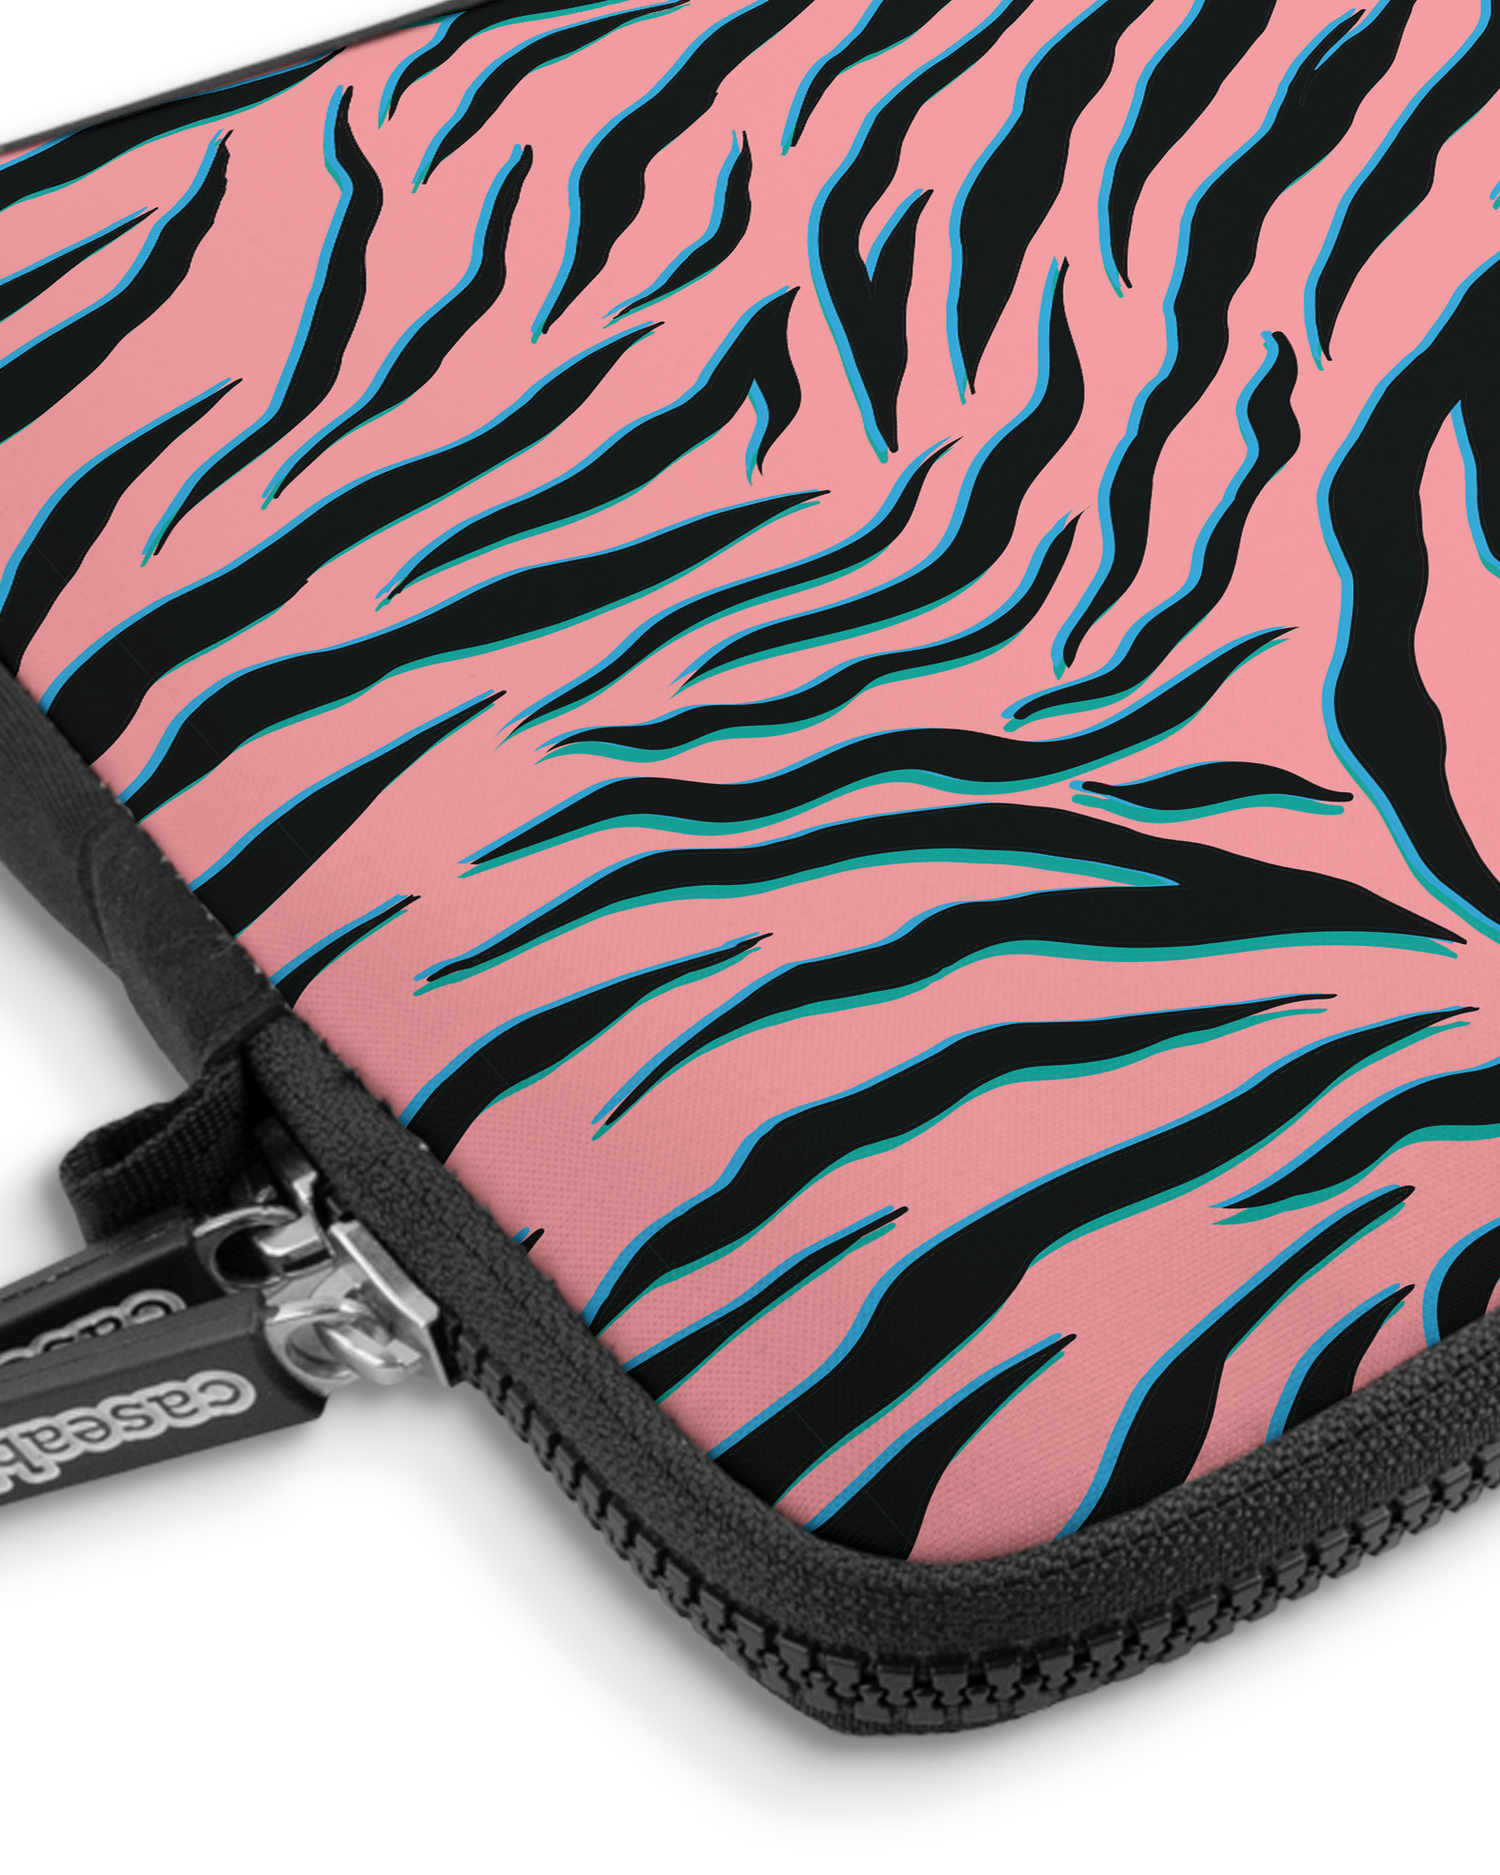 Pink Zebra Premium Laptoptasche 13 Zoll mit Gerät im Inneren